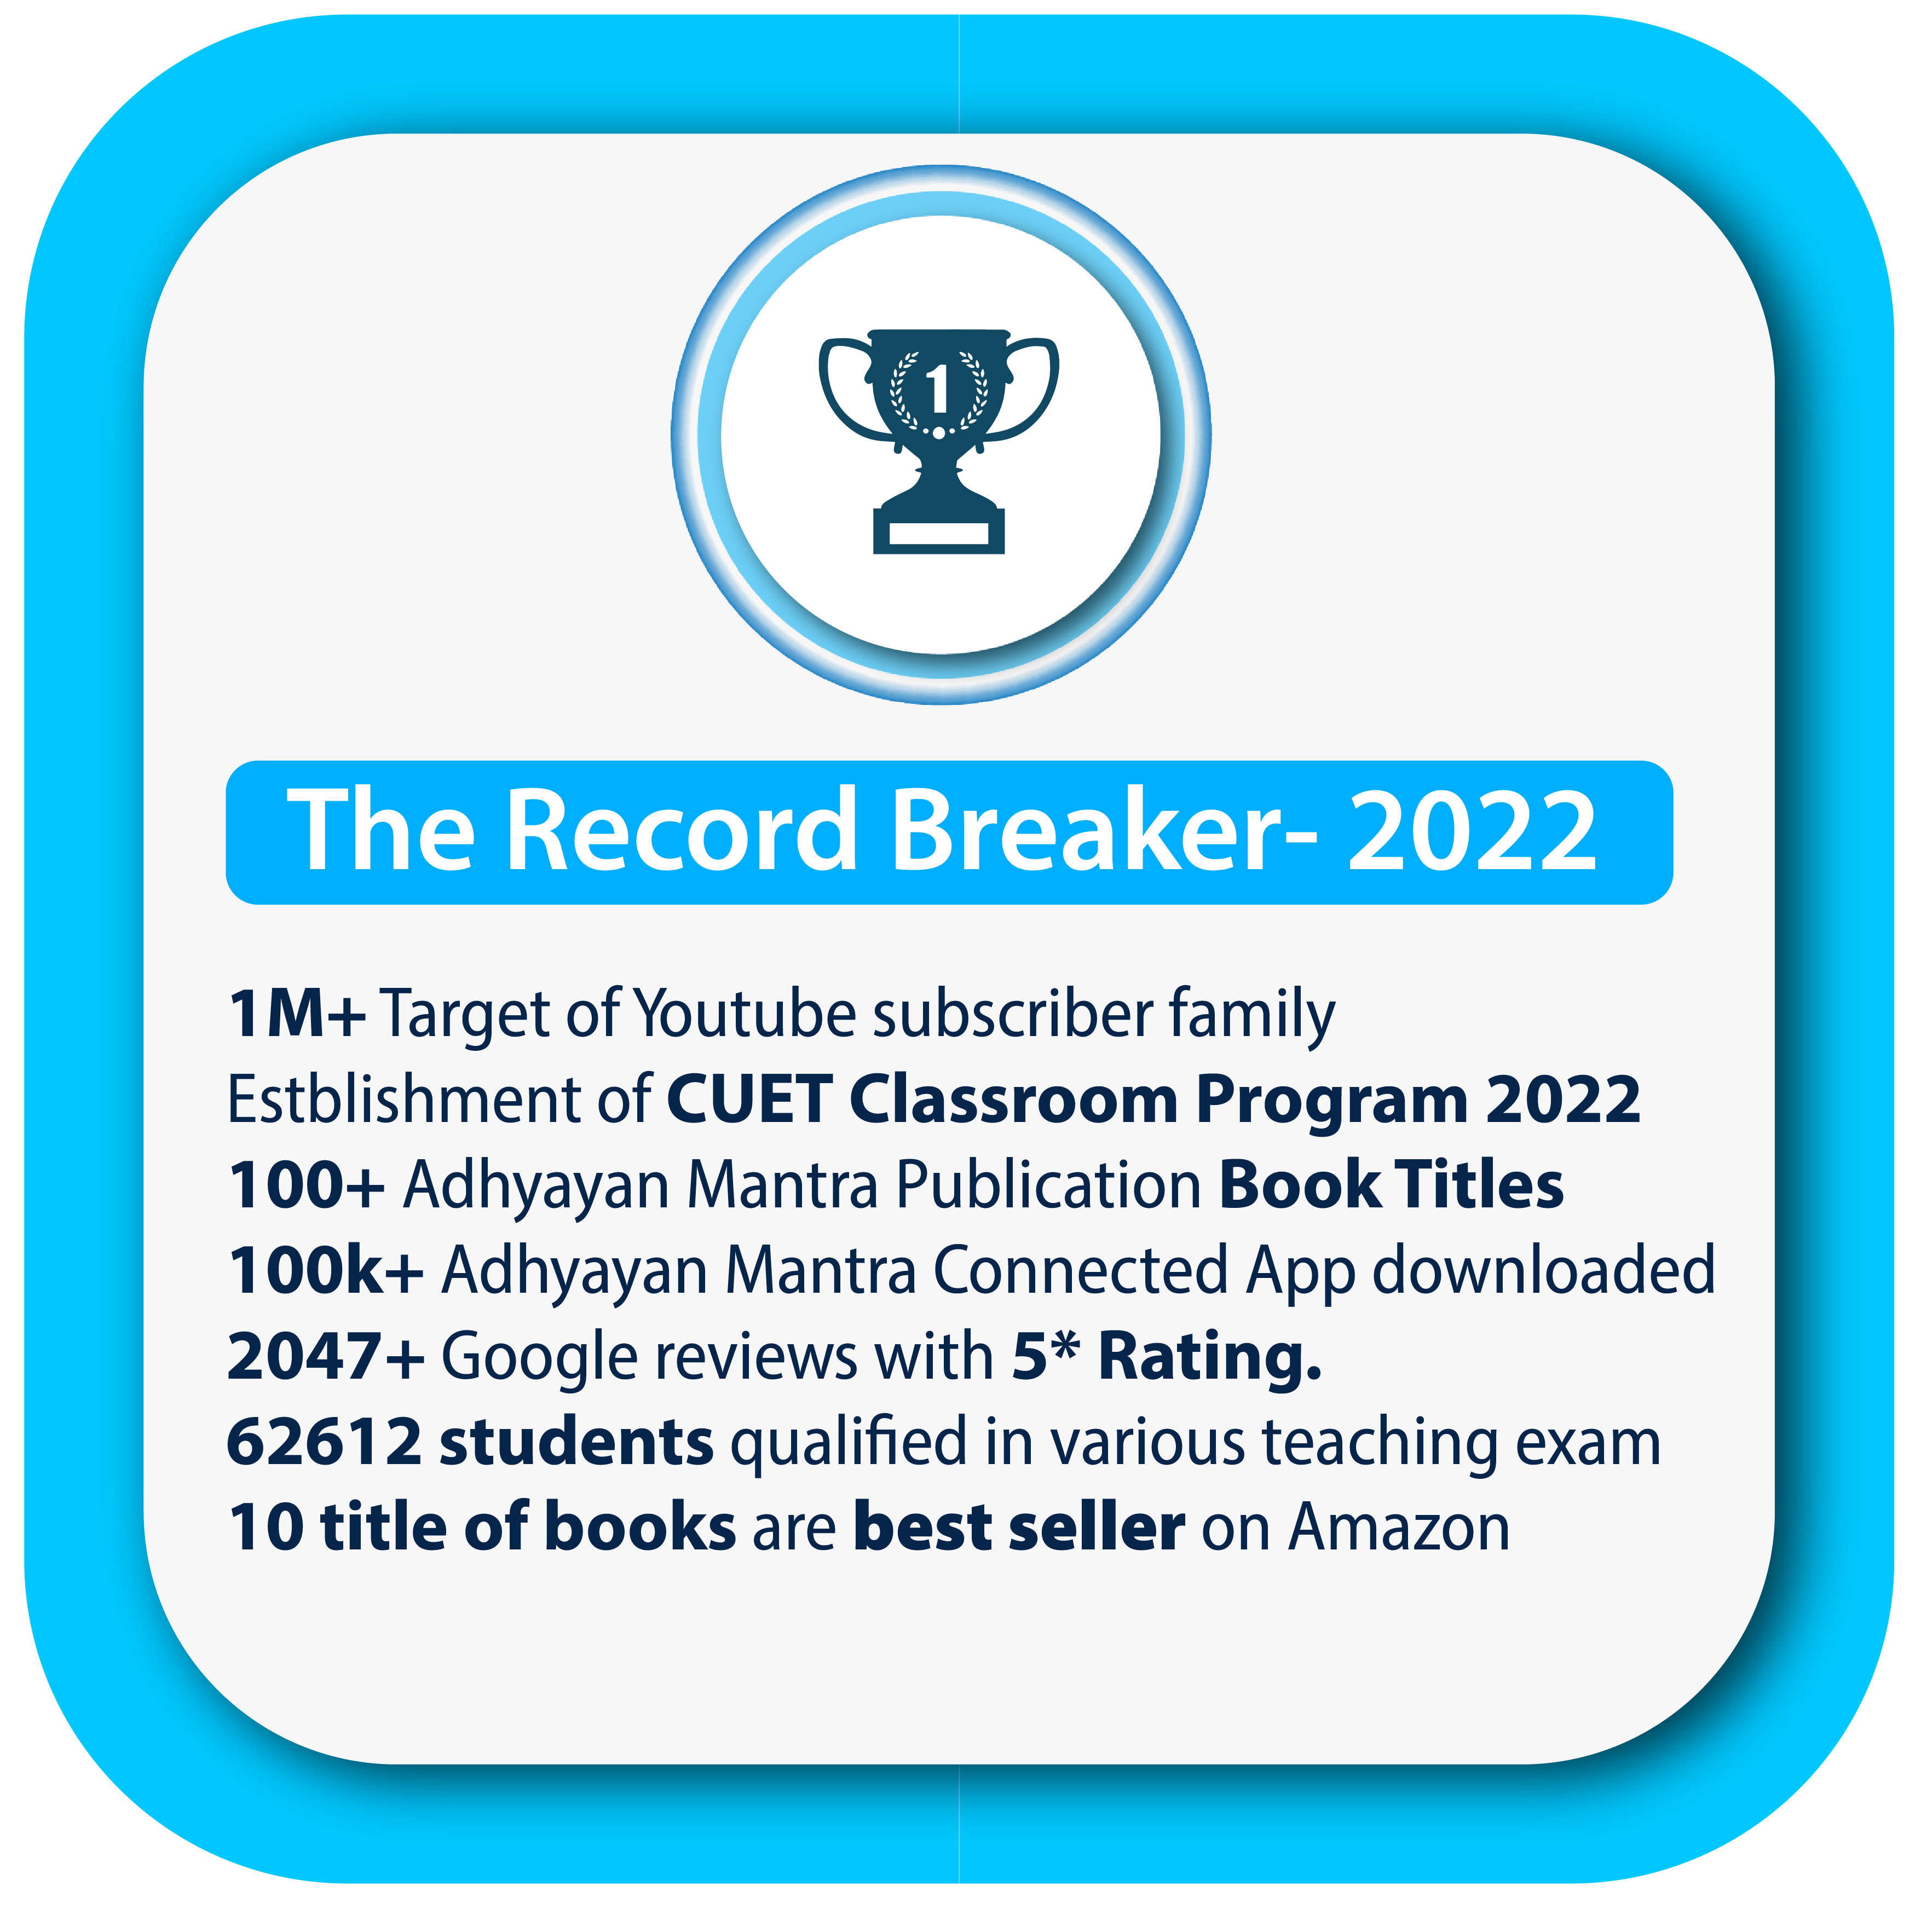 The Record Breaker 2022